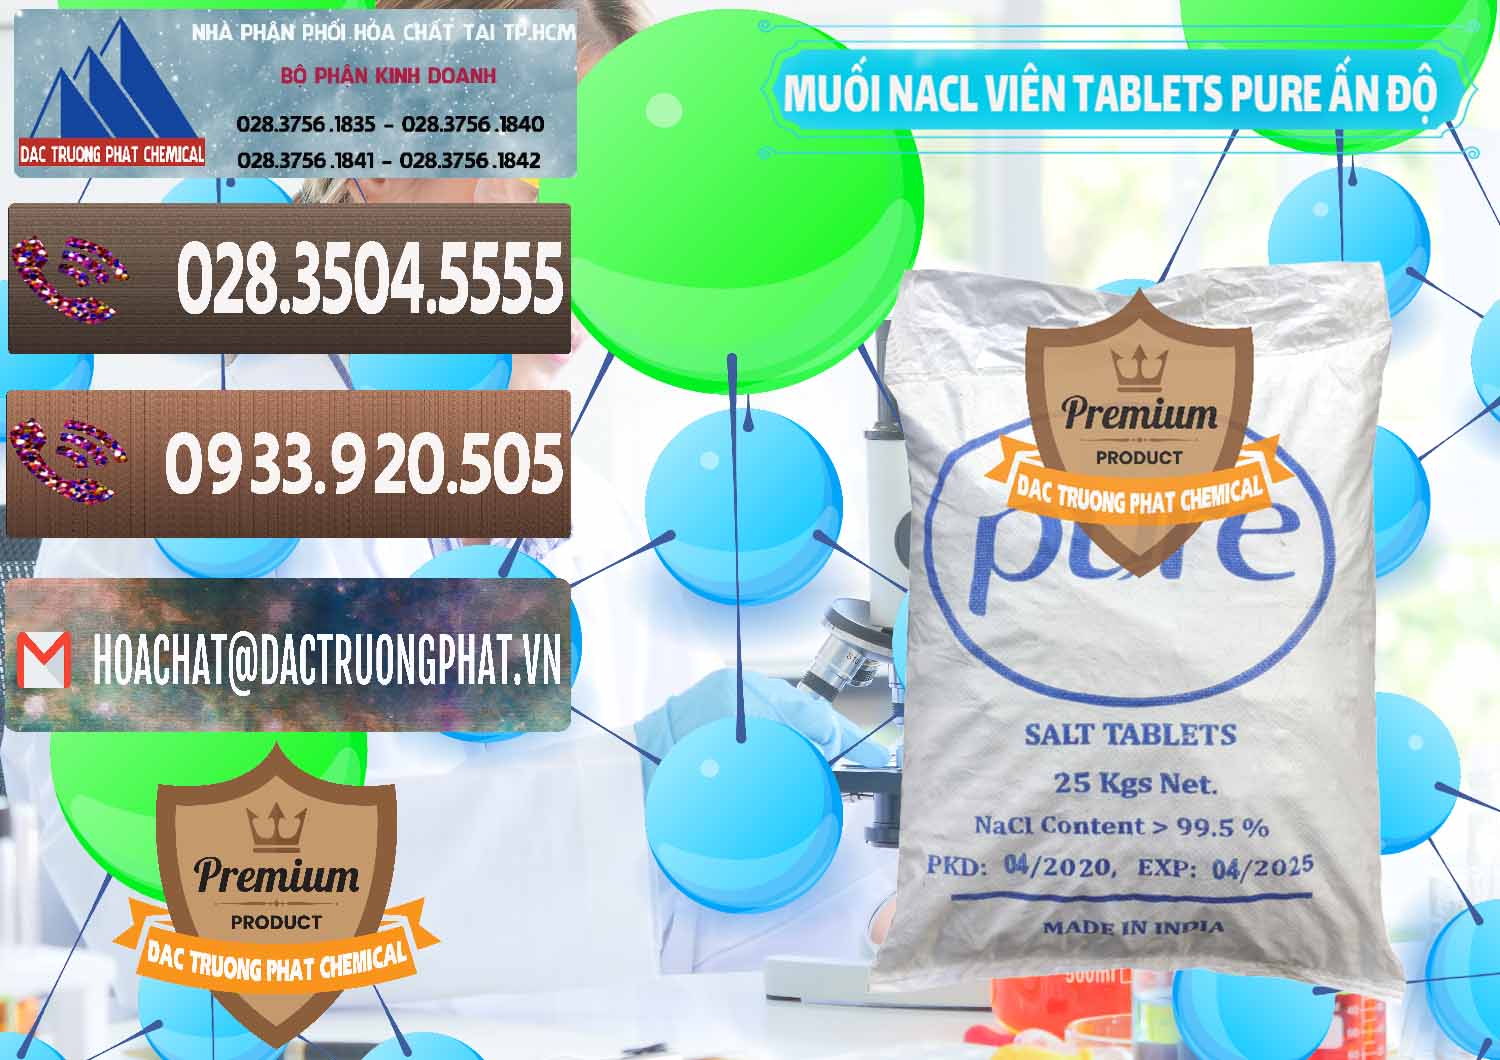 Công ty chuyên bán _ cung ứng Muối NaCL – Sodium Chloride Dạng Viên Tablets Pure Ấn Độ India - 0294 - Nơi chuyên kinh doanh & phân phối hóa chất tại TP.HCM - hoachatviet.net